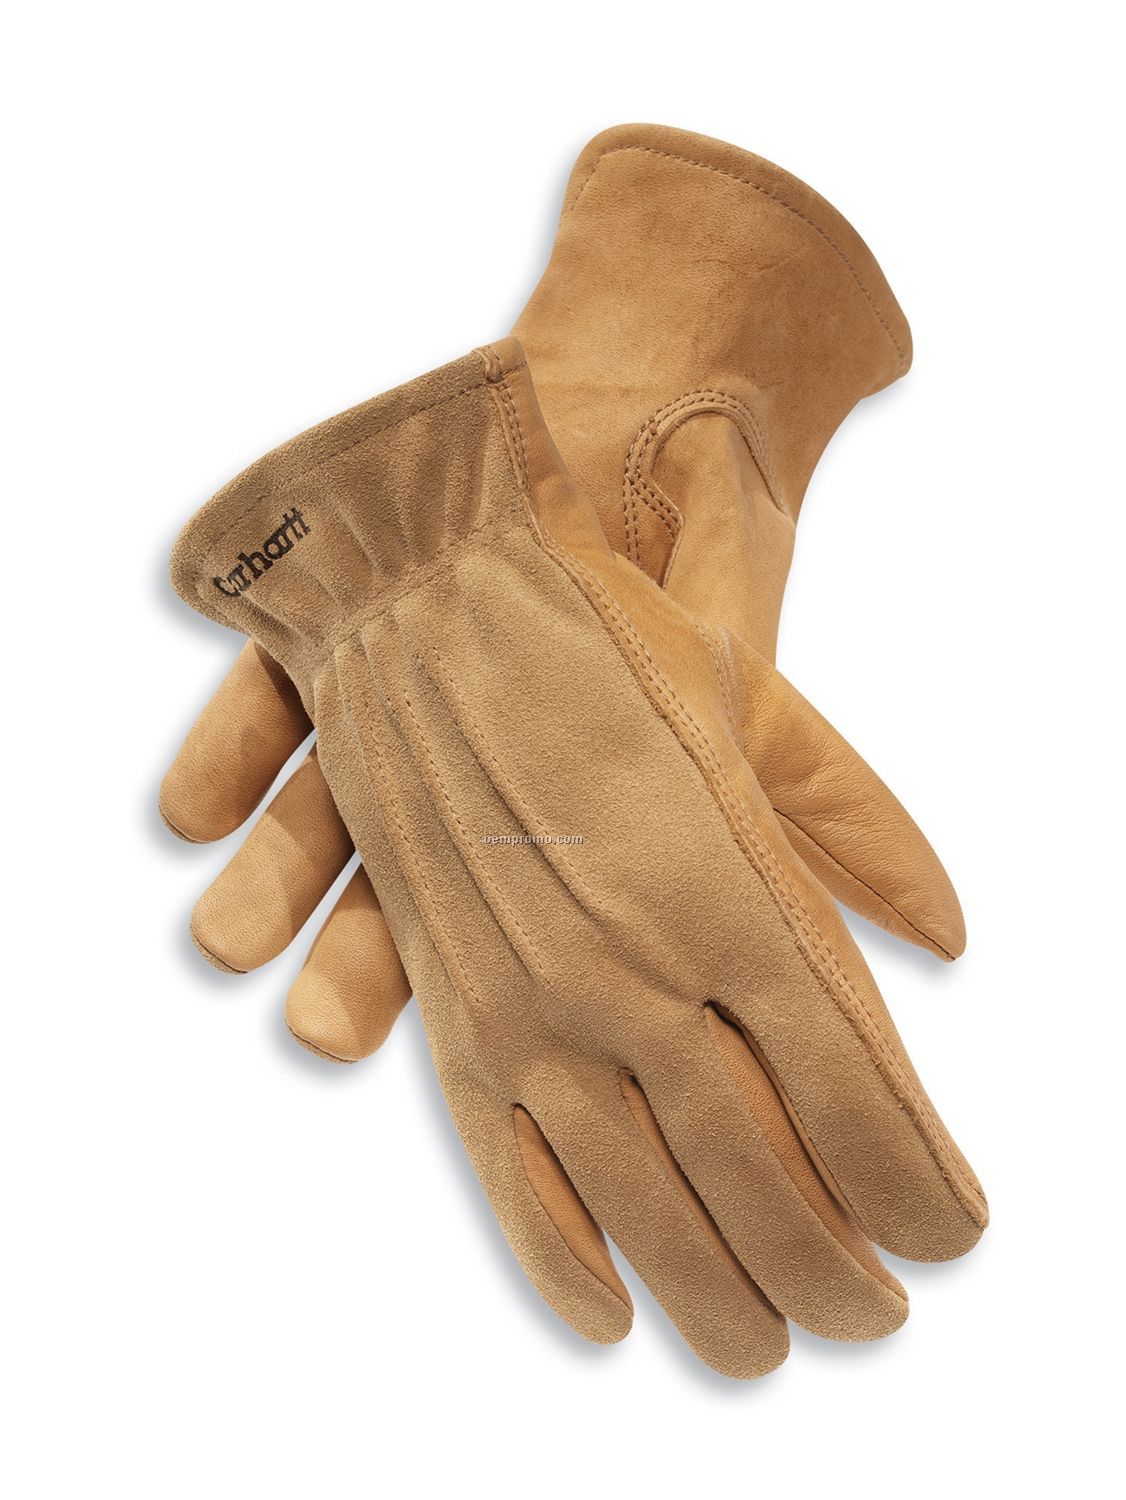 Carhartt Women's Leather Chore Glove / Grain Cowhide